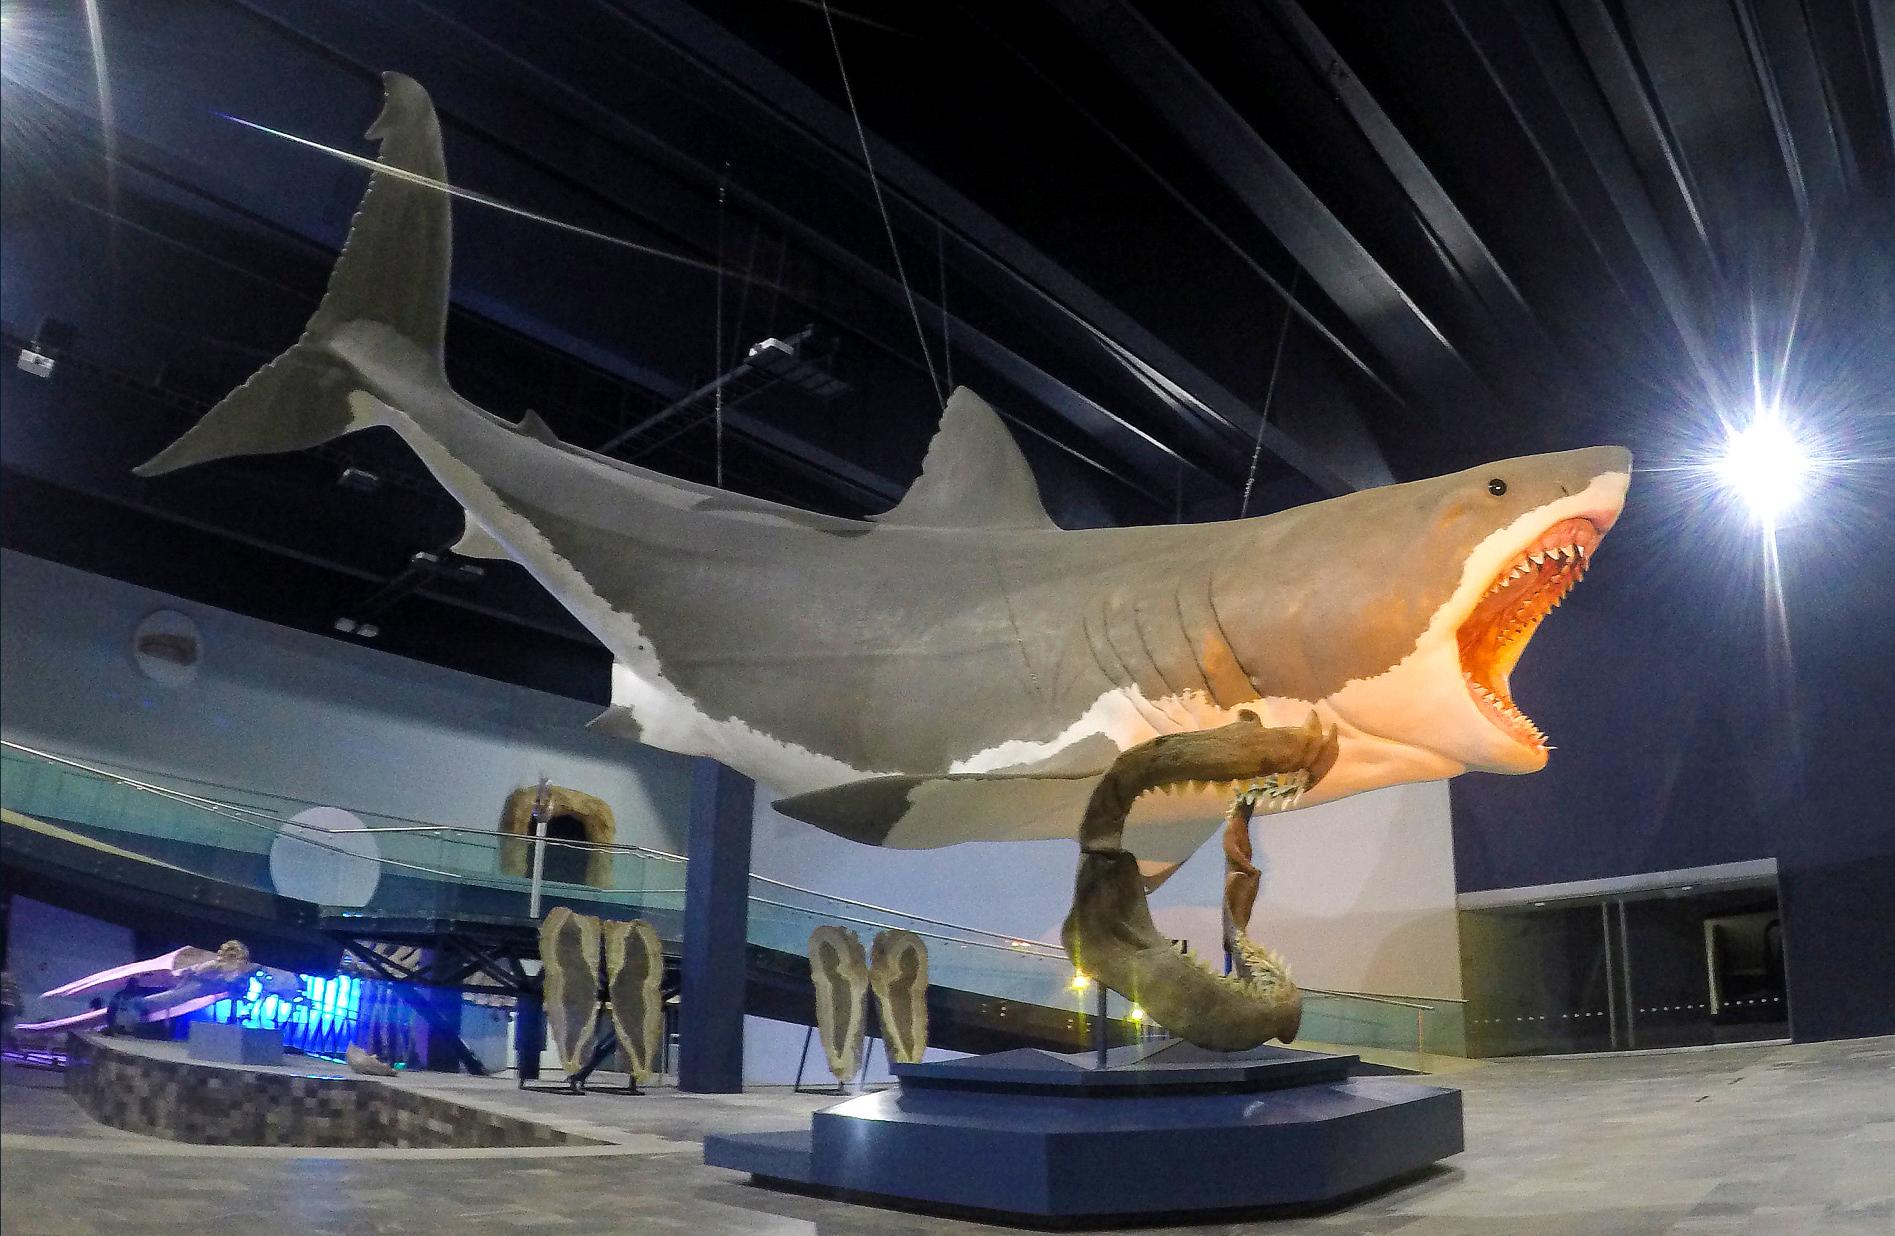 Representación artística de un tiburón megalodón de 16 metros de largo en el Museo de la Evolución, Puebla, México.